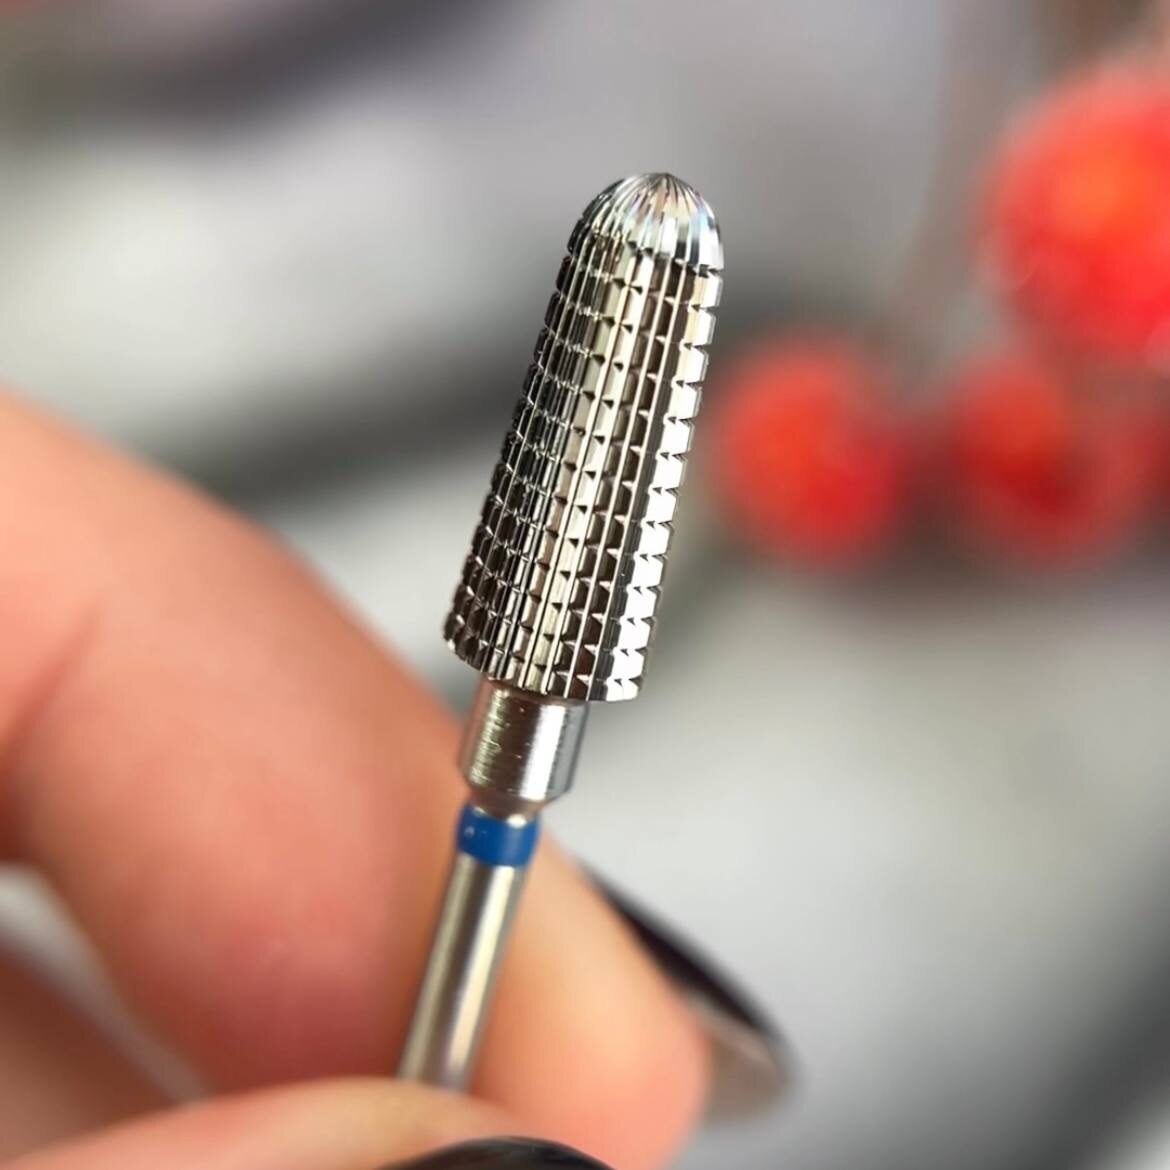 Разбалансировка ручки фрезера означает необходимость ремонта аппарата. Как избежать проблемы?